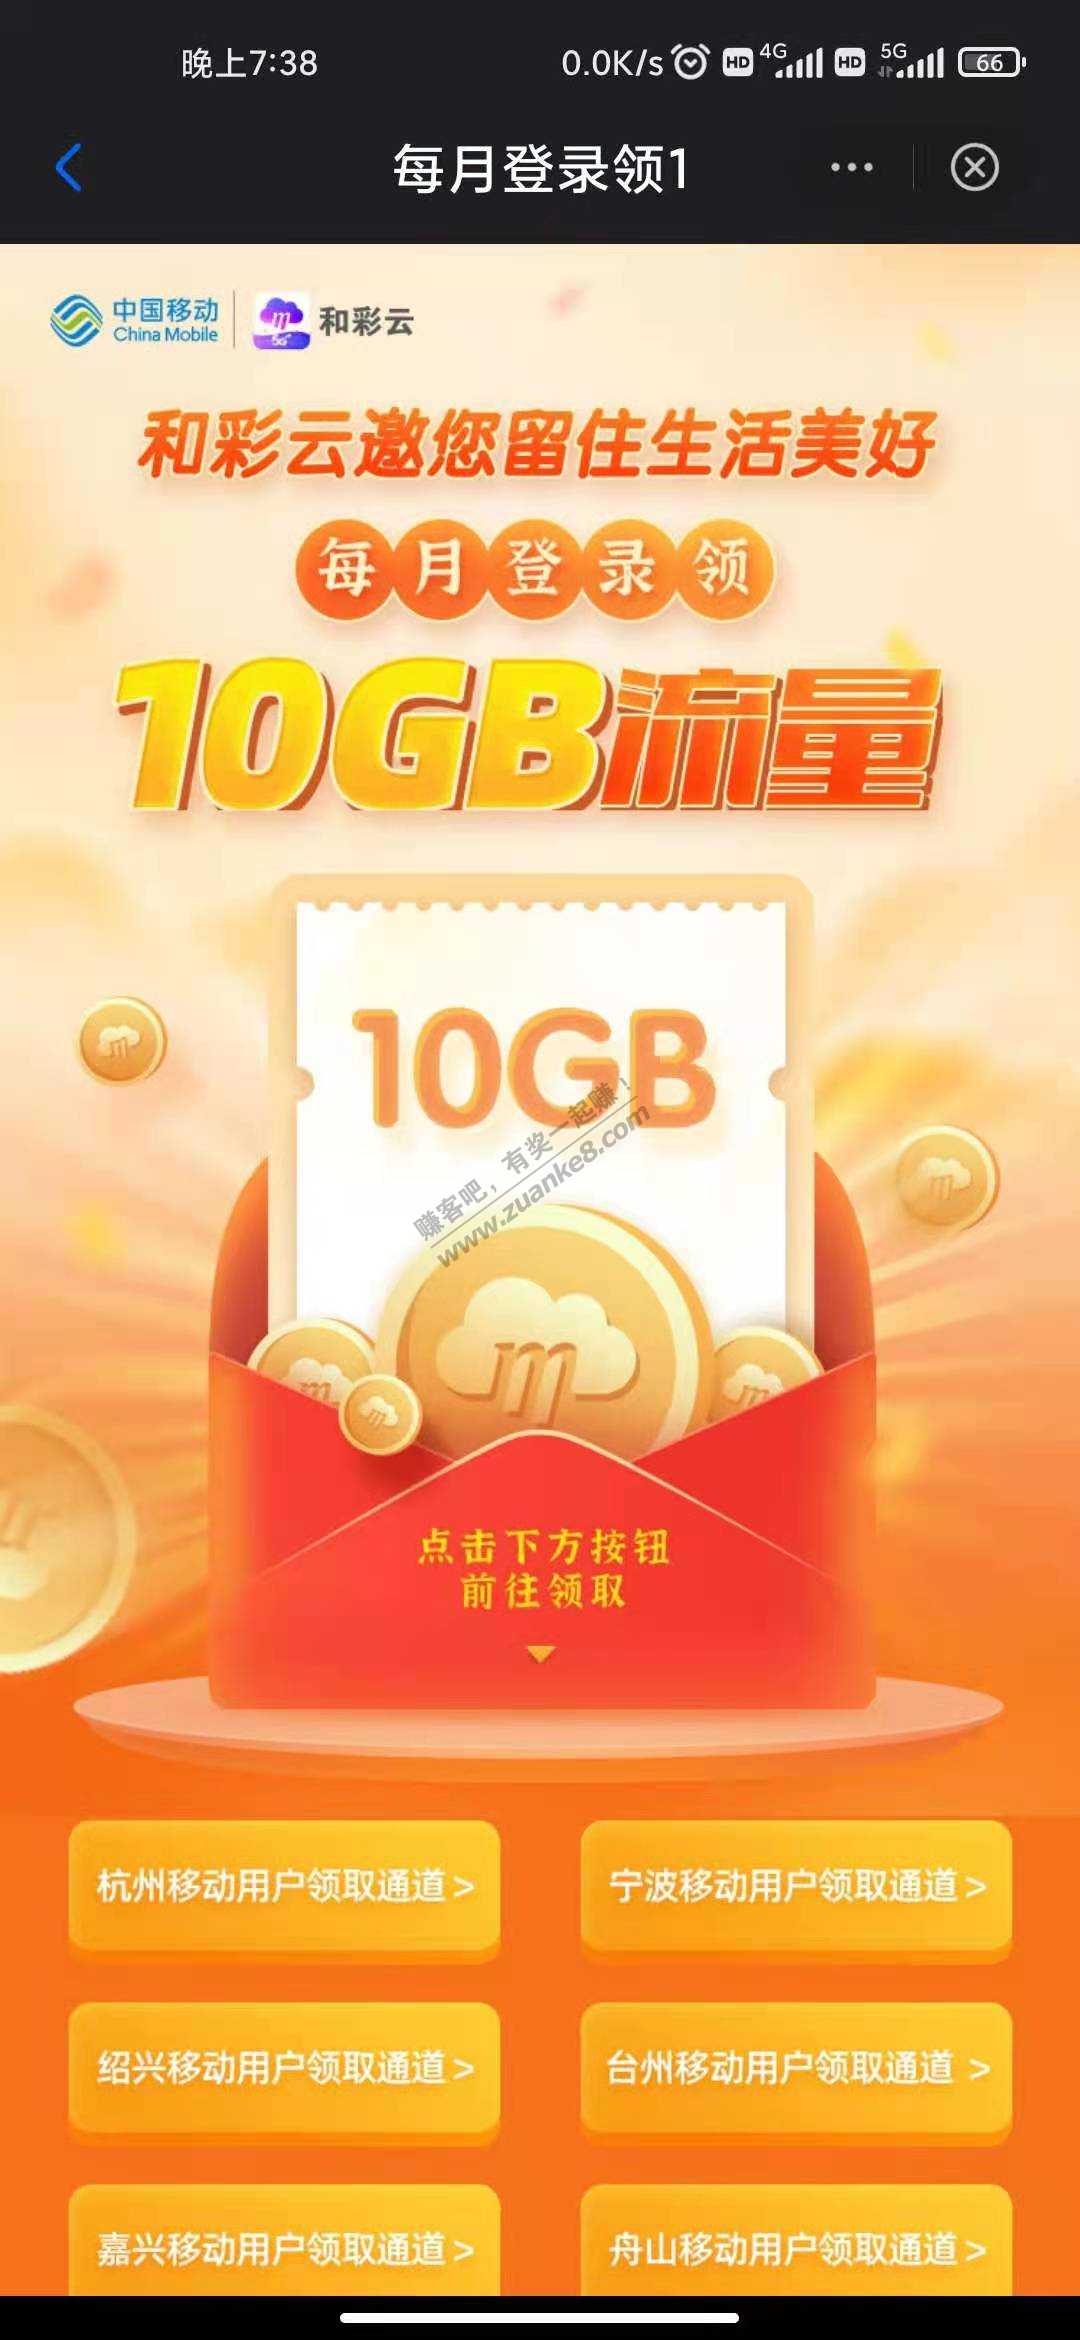 浙江移动 10G流量-惠小助(52huixz.com)